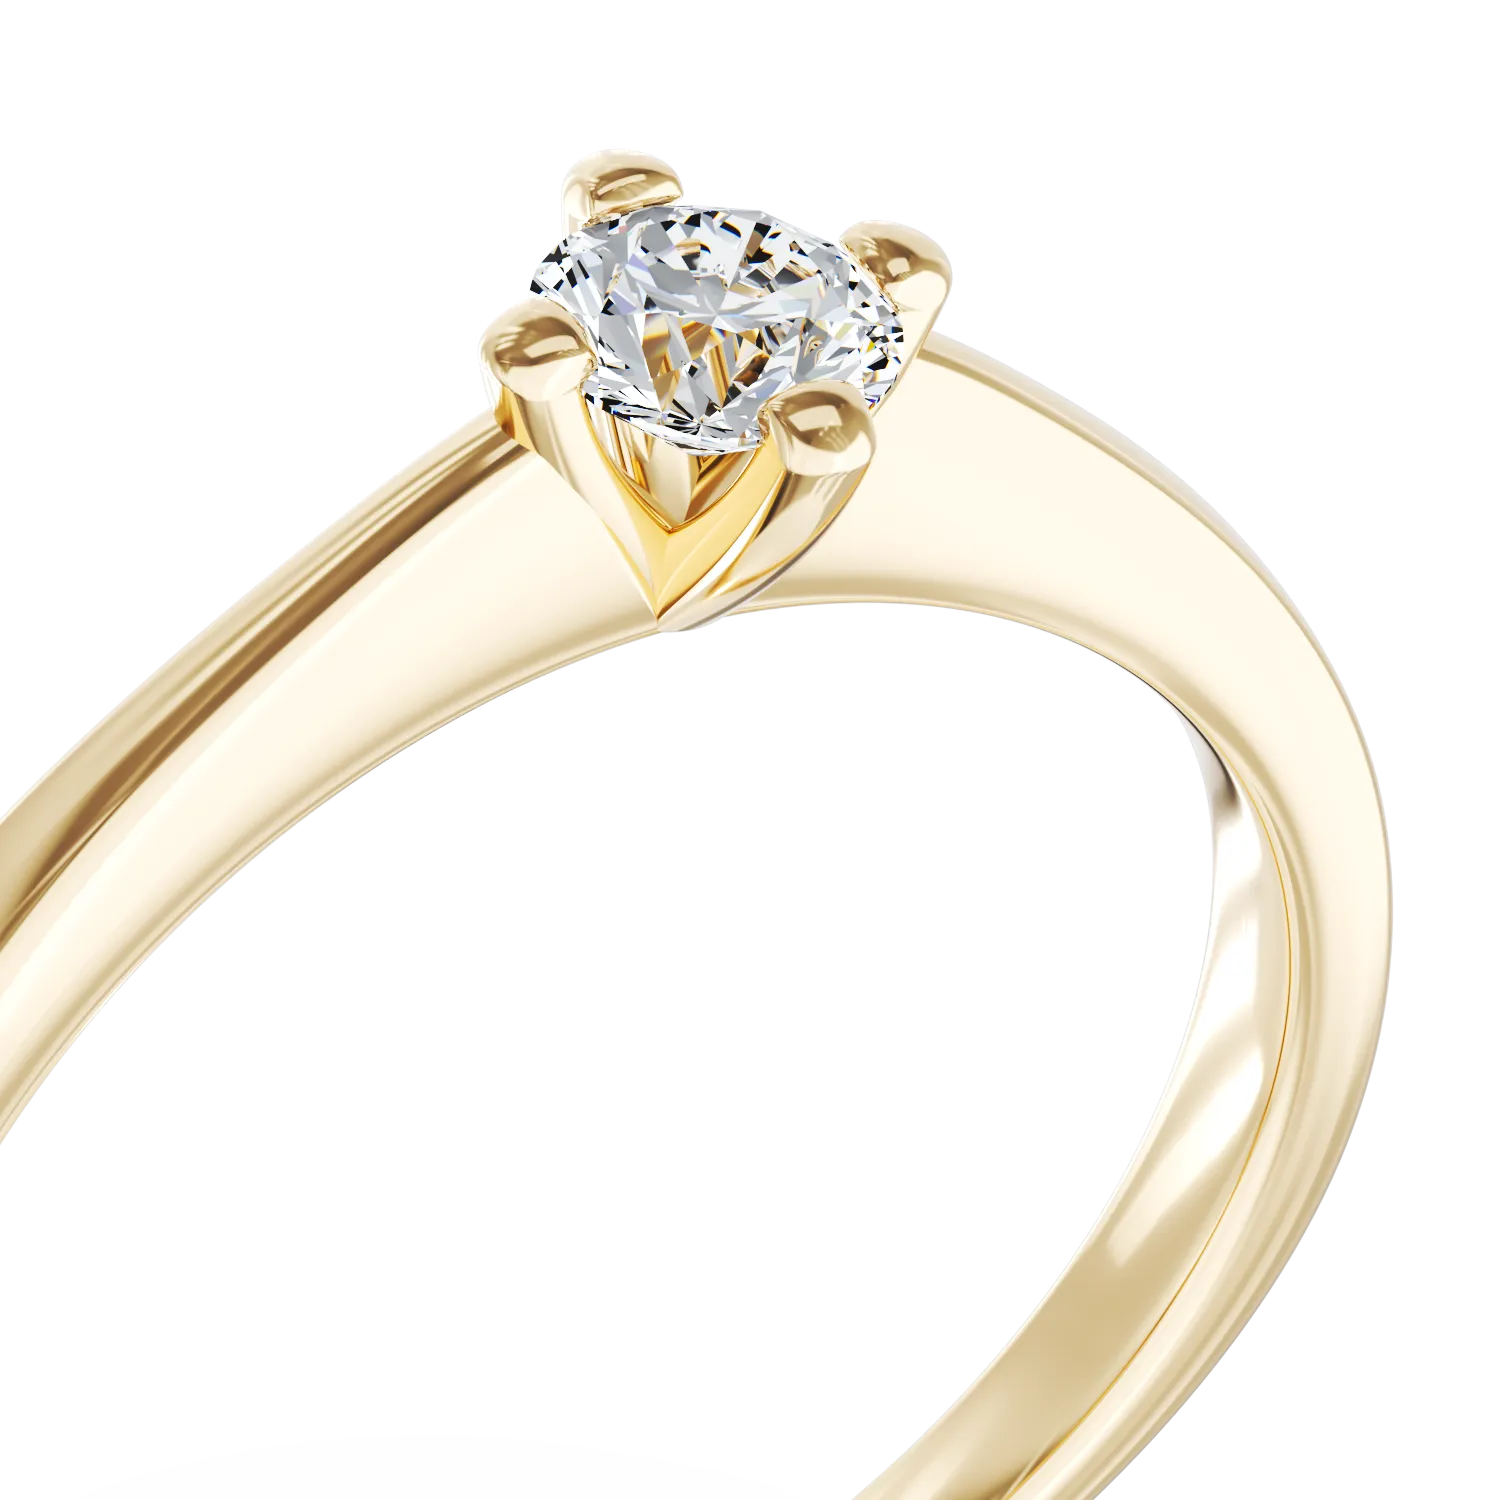 Eljegyzési gyűrű 18K-os sárga aranyból egy 0,2ct solitaire gyémánttal